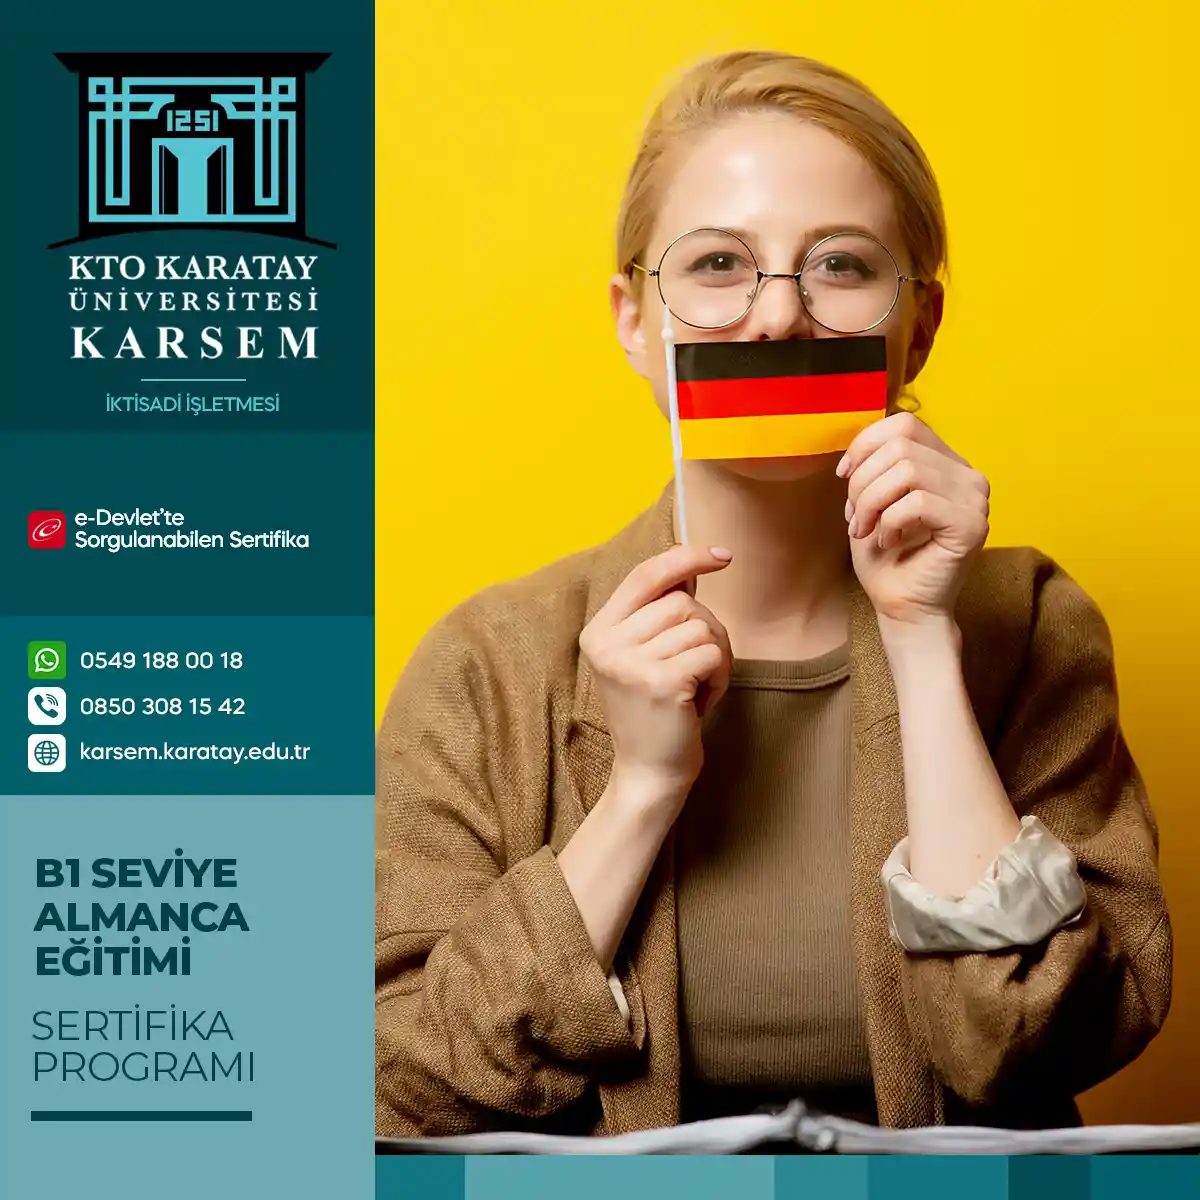 B1 Seviye Almanca Eğitimi Sertifika Programı